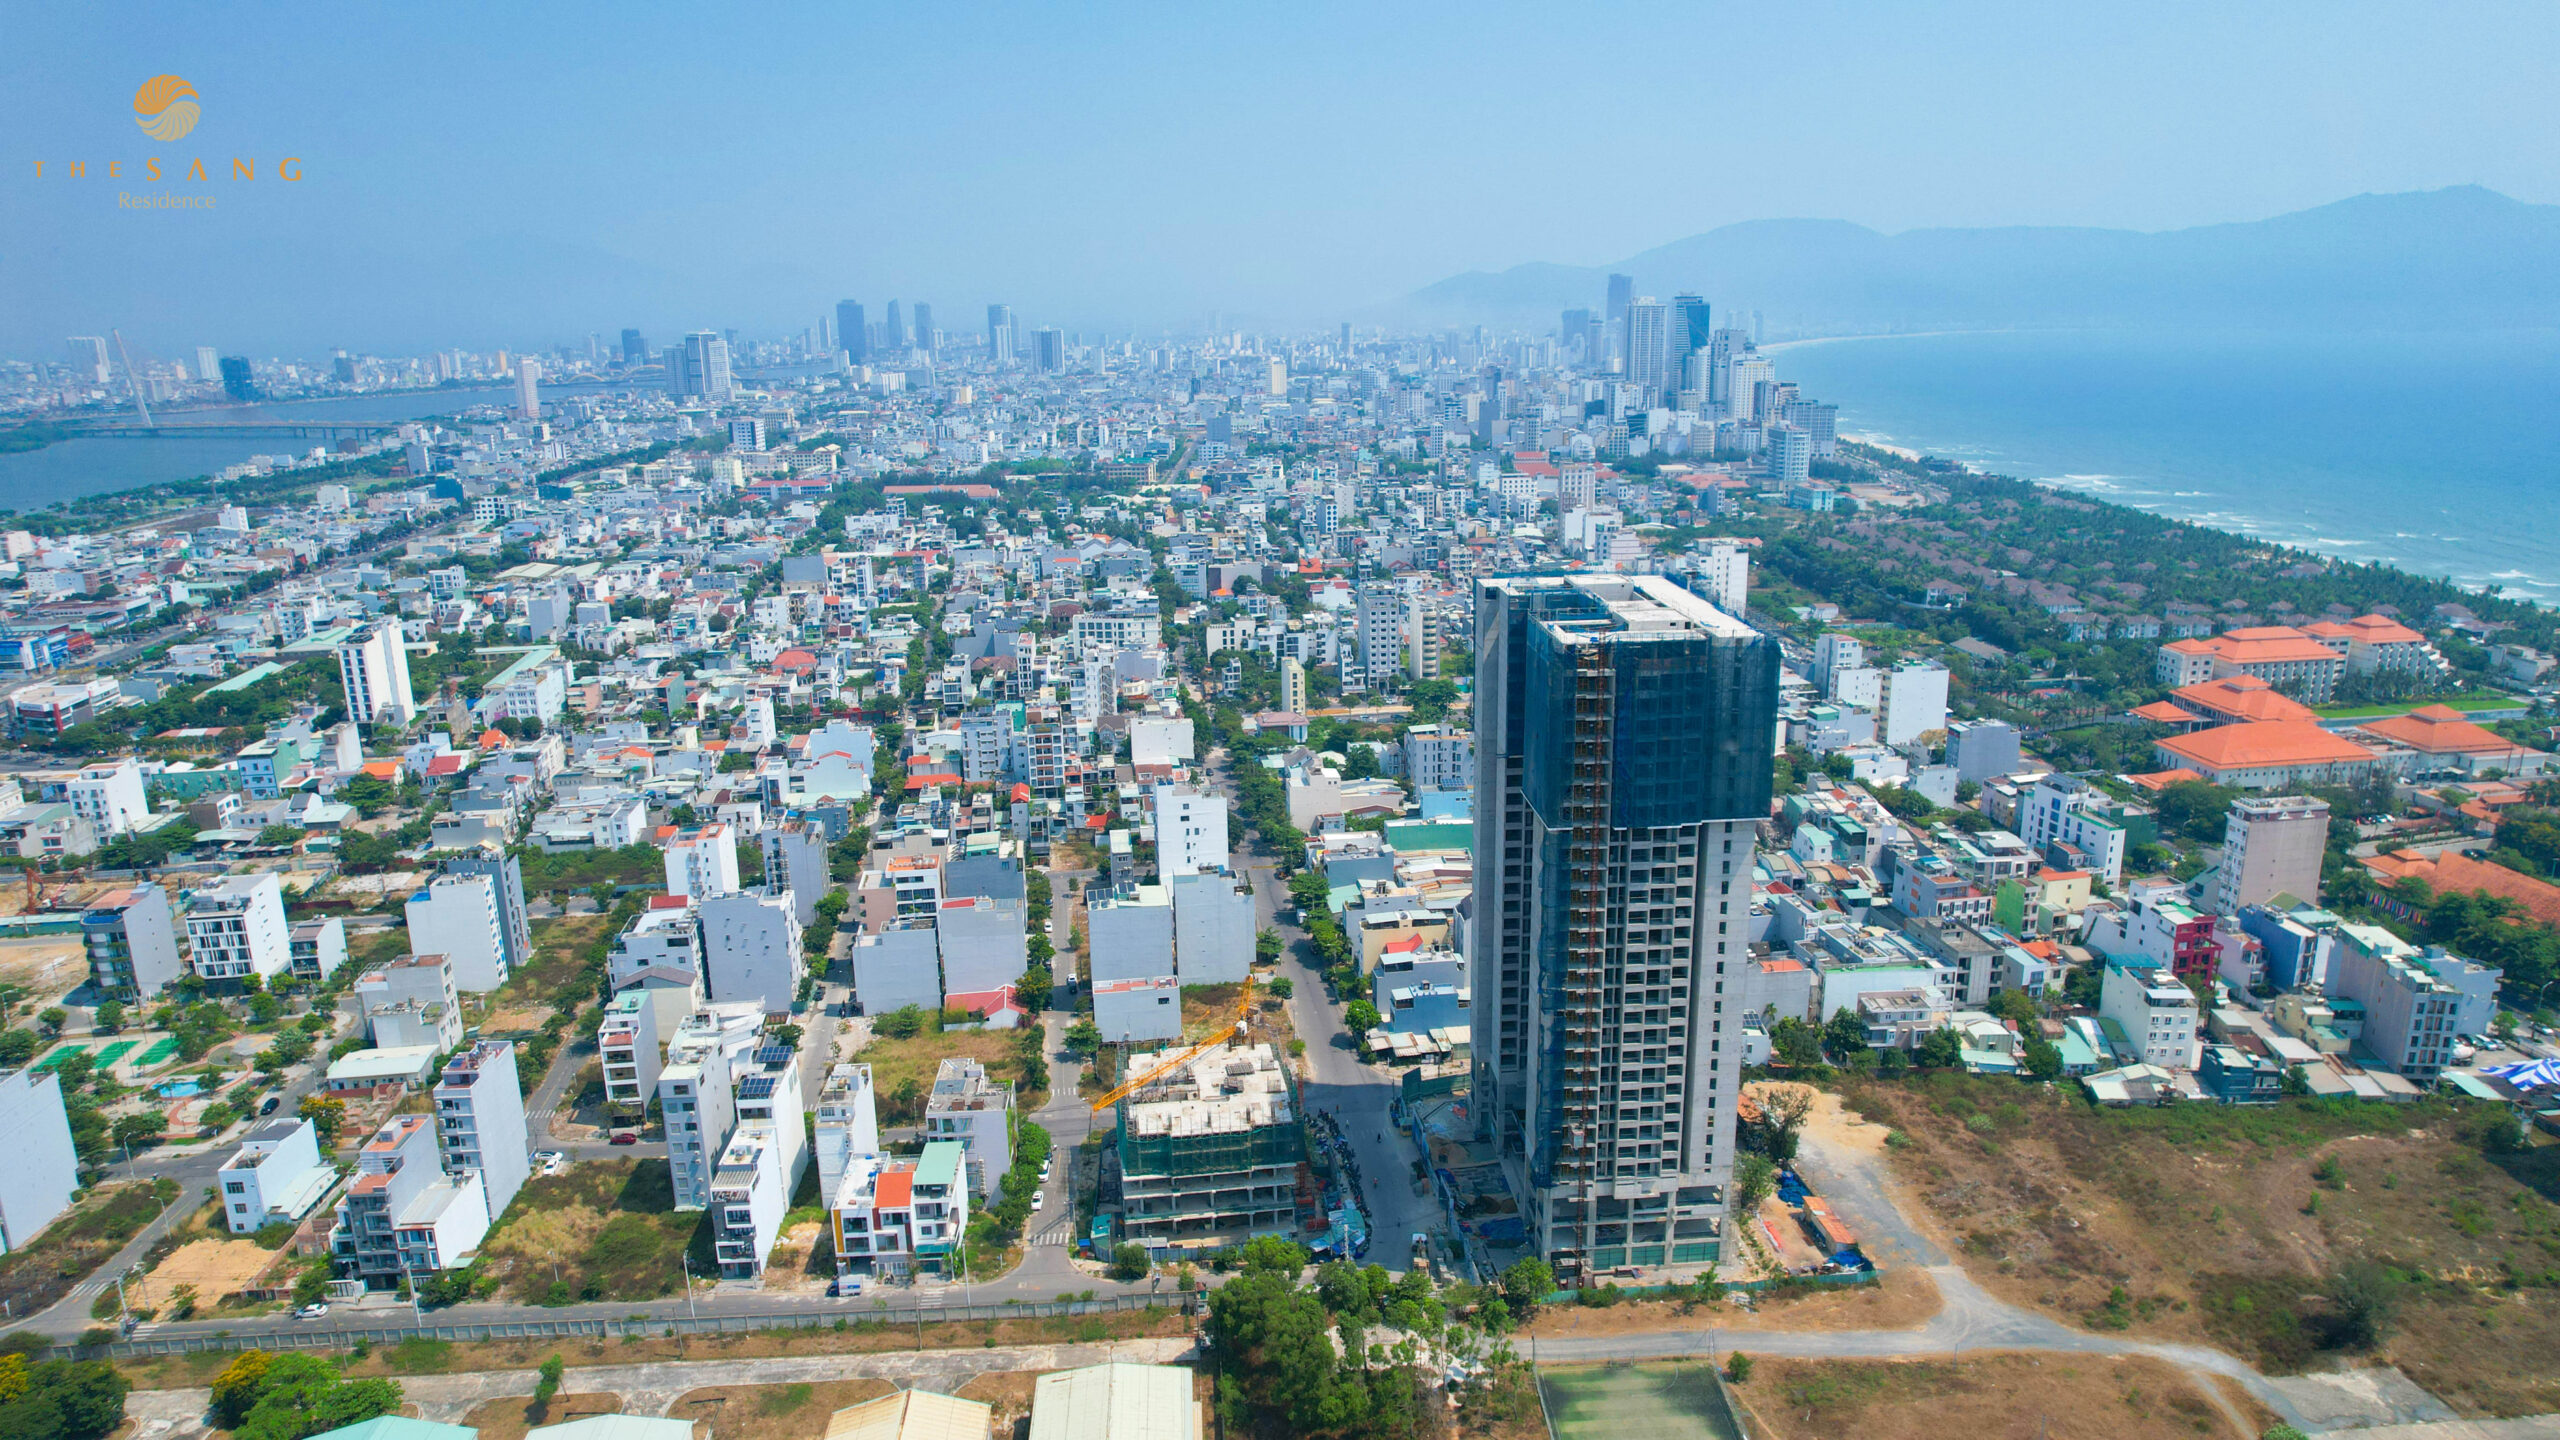 Tiềm năng bứt tốc của thị trường bất động sản Đà Nẵng - Viet Nam Smart City